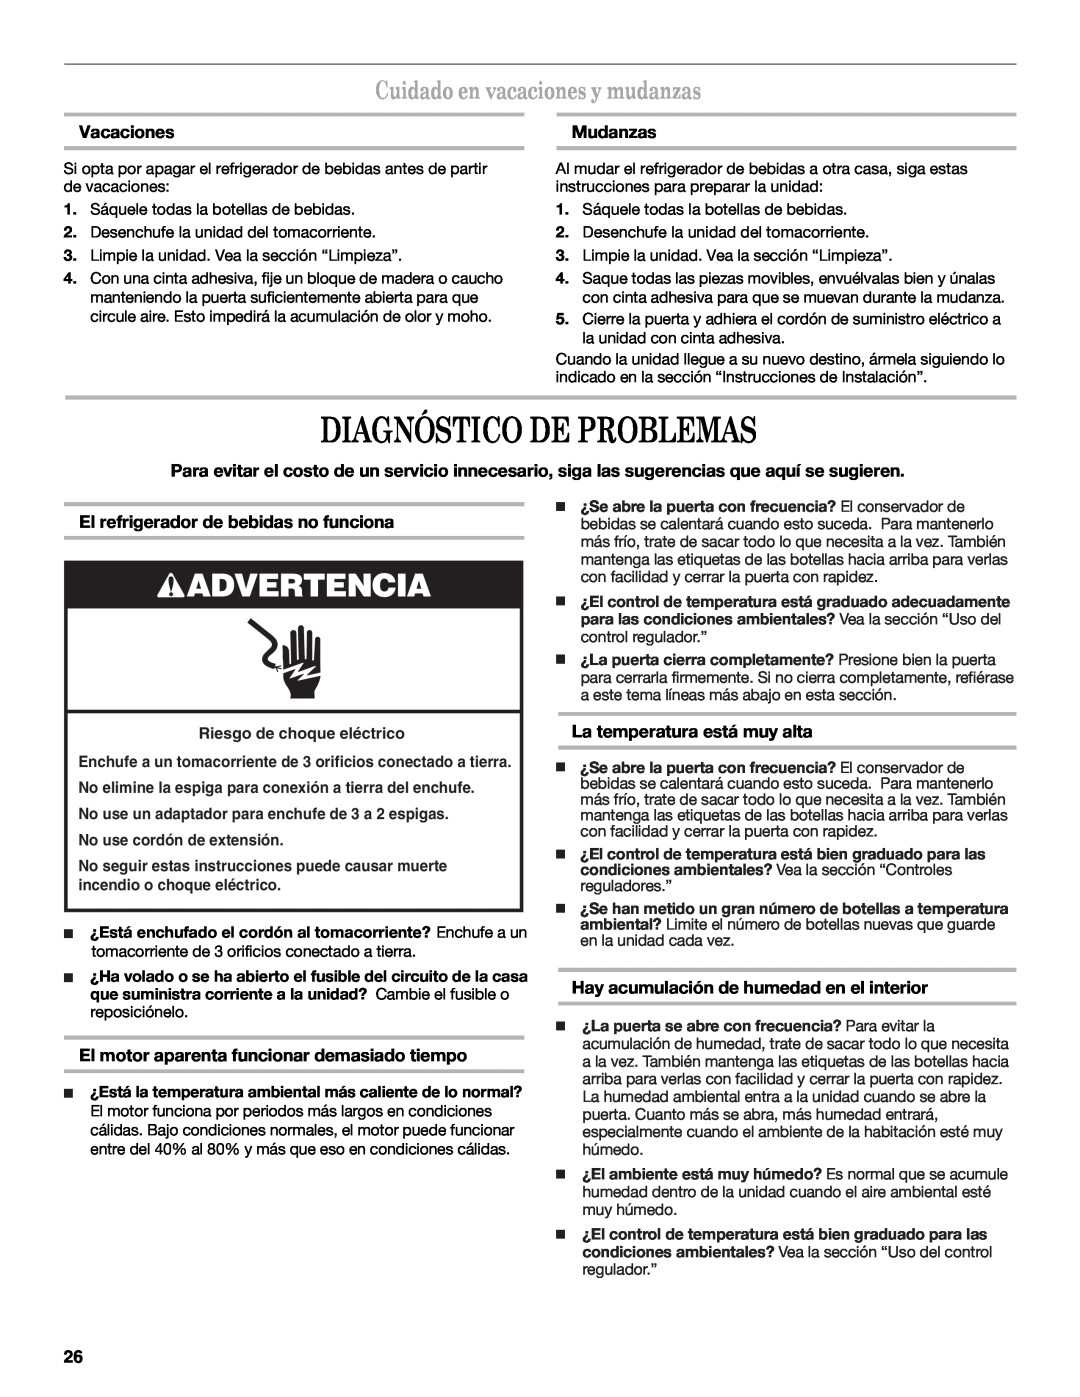 Whirlpool WWC359BLS manual Diagnóstico De Problemas, Cuidado en vacaciones y mudanzas, Vacaciones, Mudanzas, Advertencia 